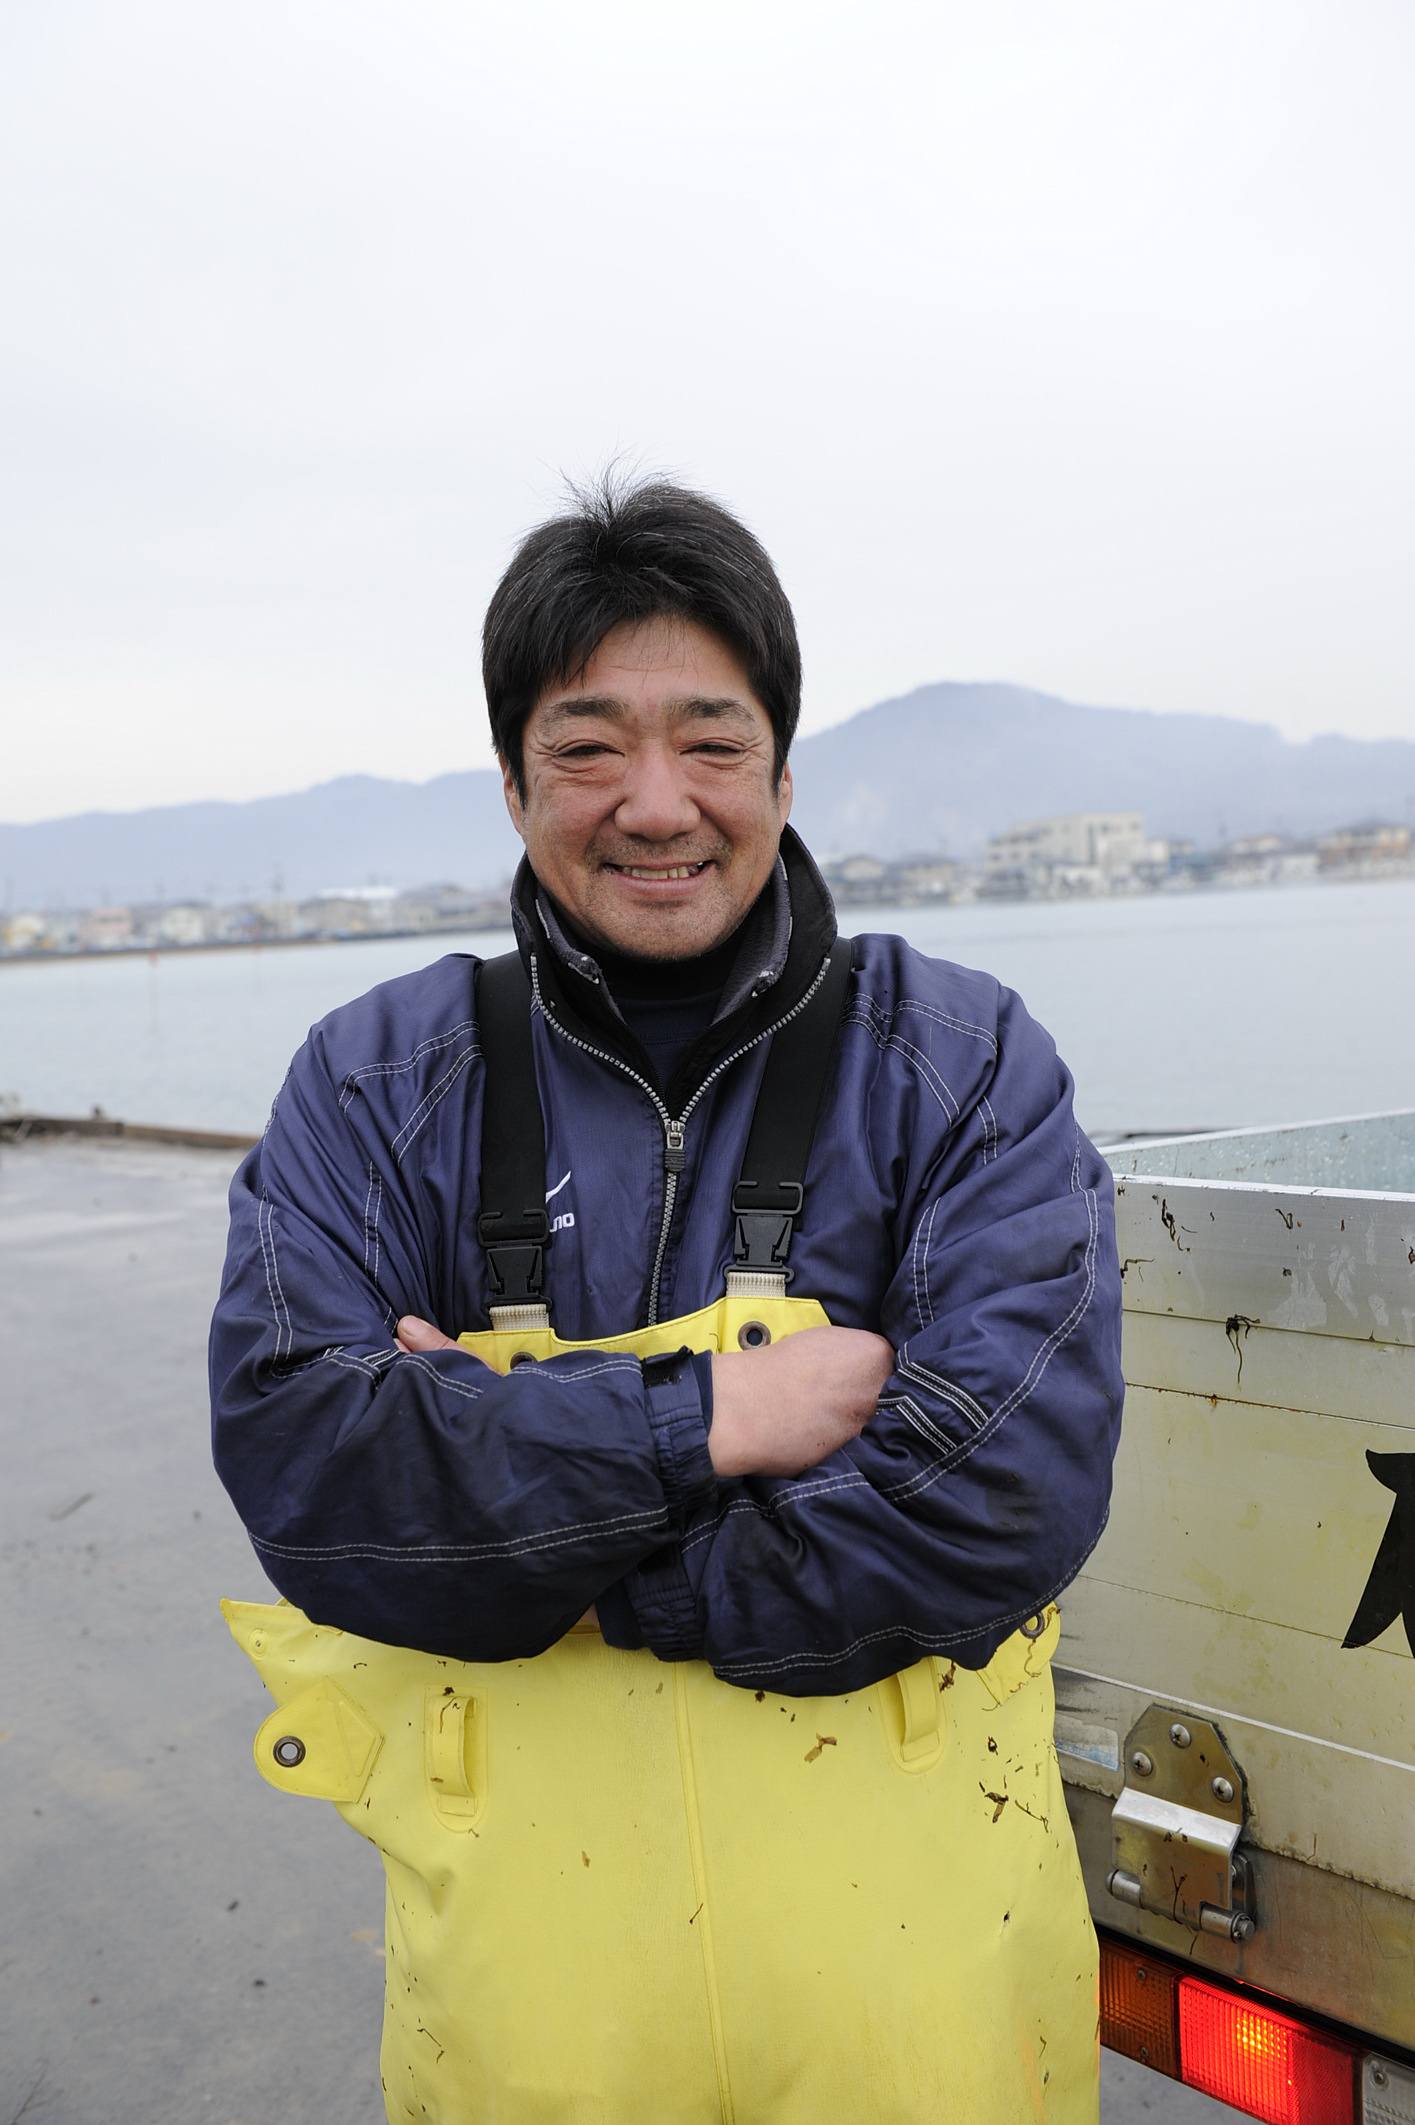 Le moral de Takehiko Nanbu va beaucoup mieux depuis qu’il a repris son commerce d’algues. M. Nanbu avoue que lorsque le tsunami s’est abattu et a tout emporté sur son passage, y compris son bateau et sa maison, il a cru ne jamais s’en sortir.  
<p>